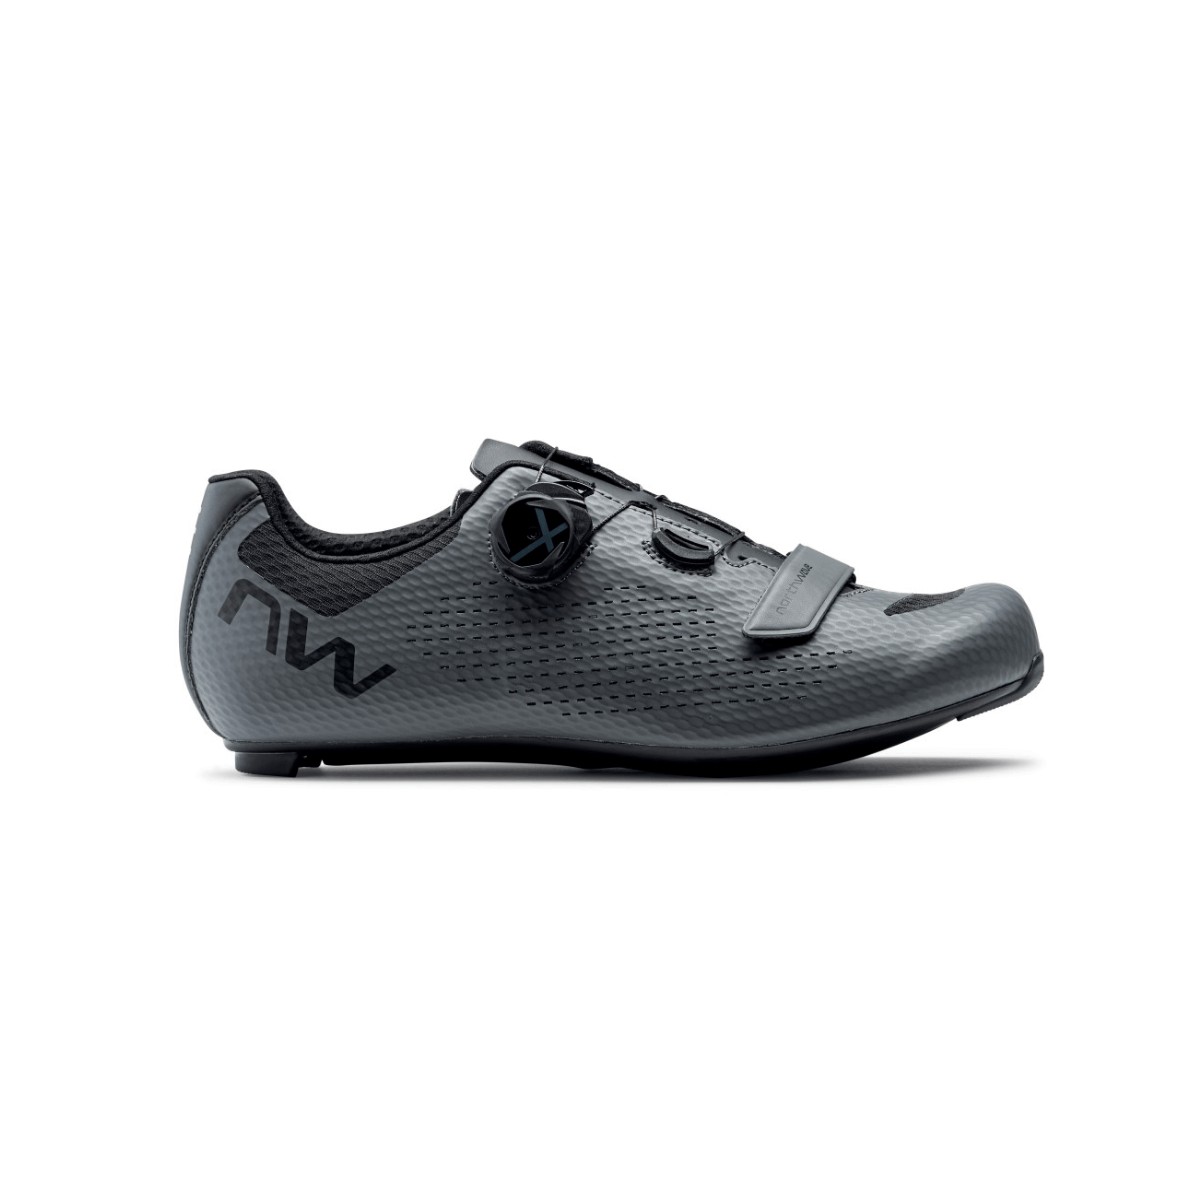 Northwave Storm Carbon 2 Shoes Gray, Size 42 - EUR